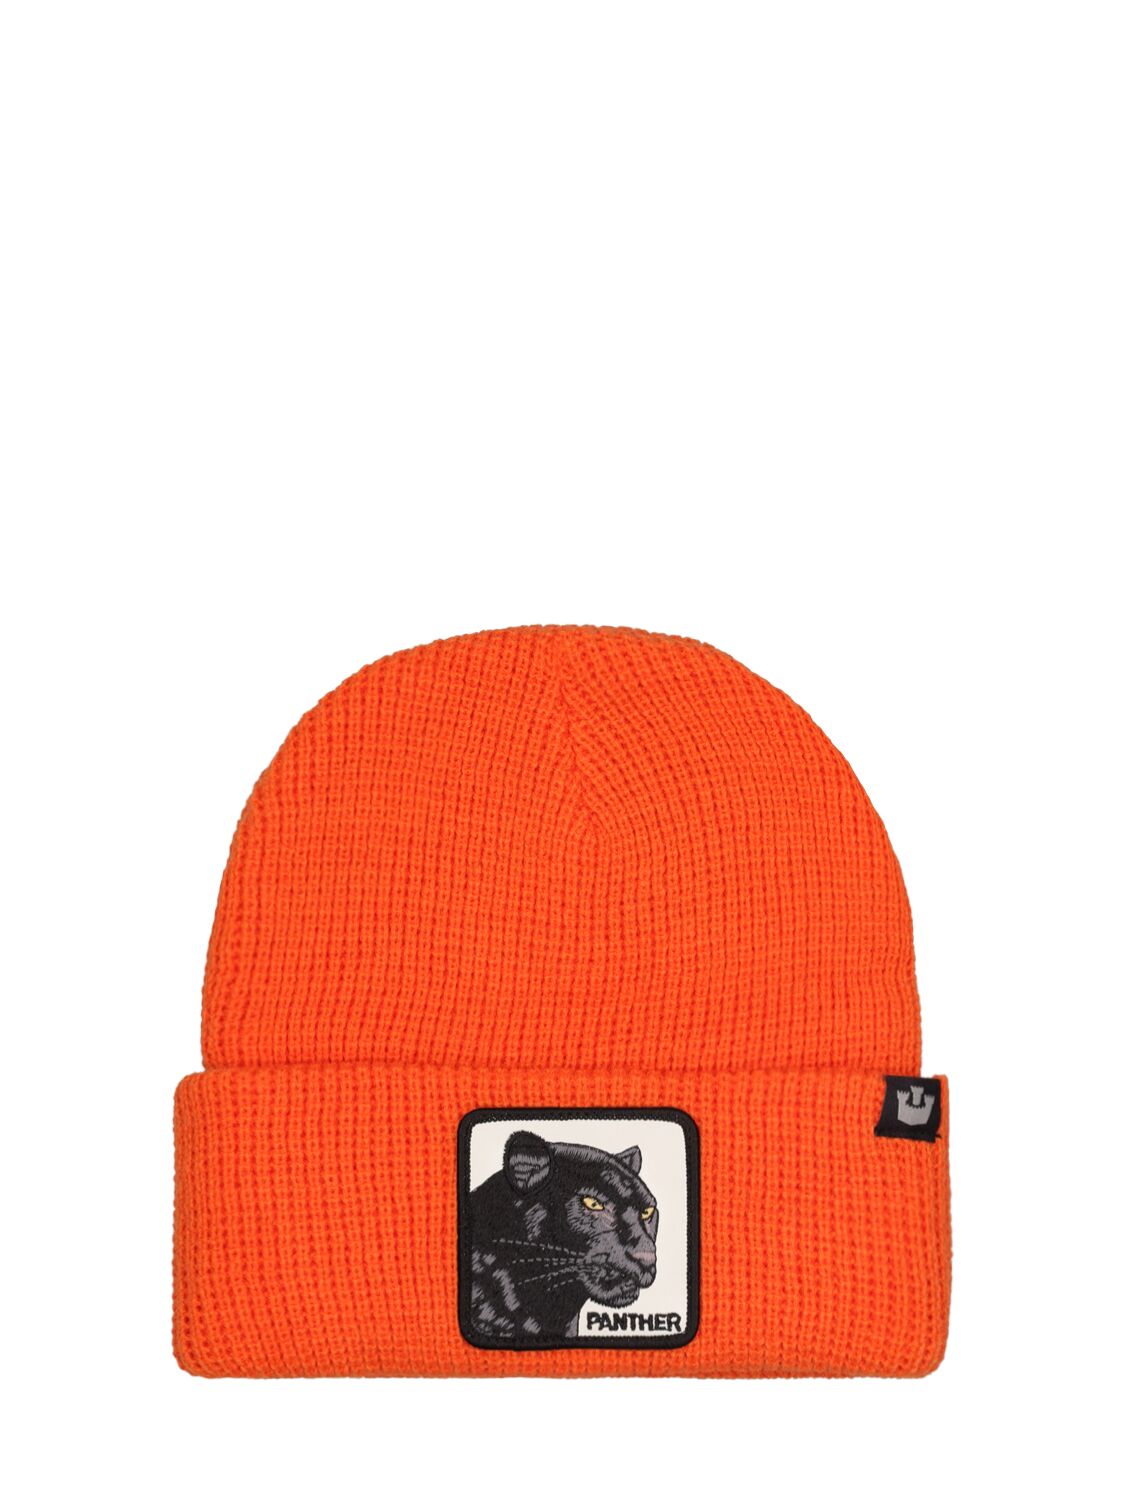 Goorin Bros Trouserer Vision Knit Beanie In Orange